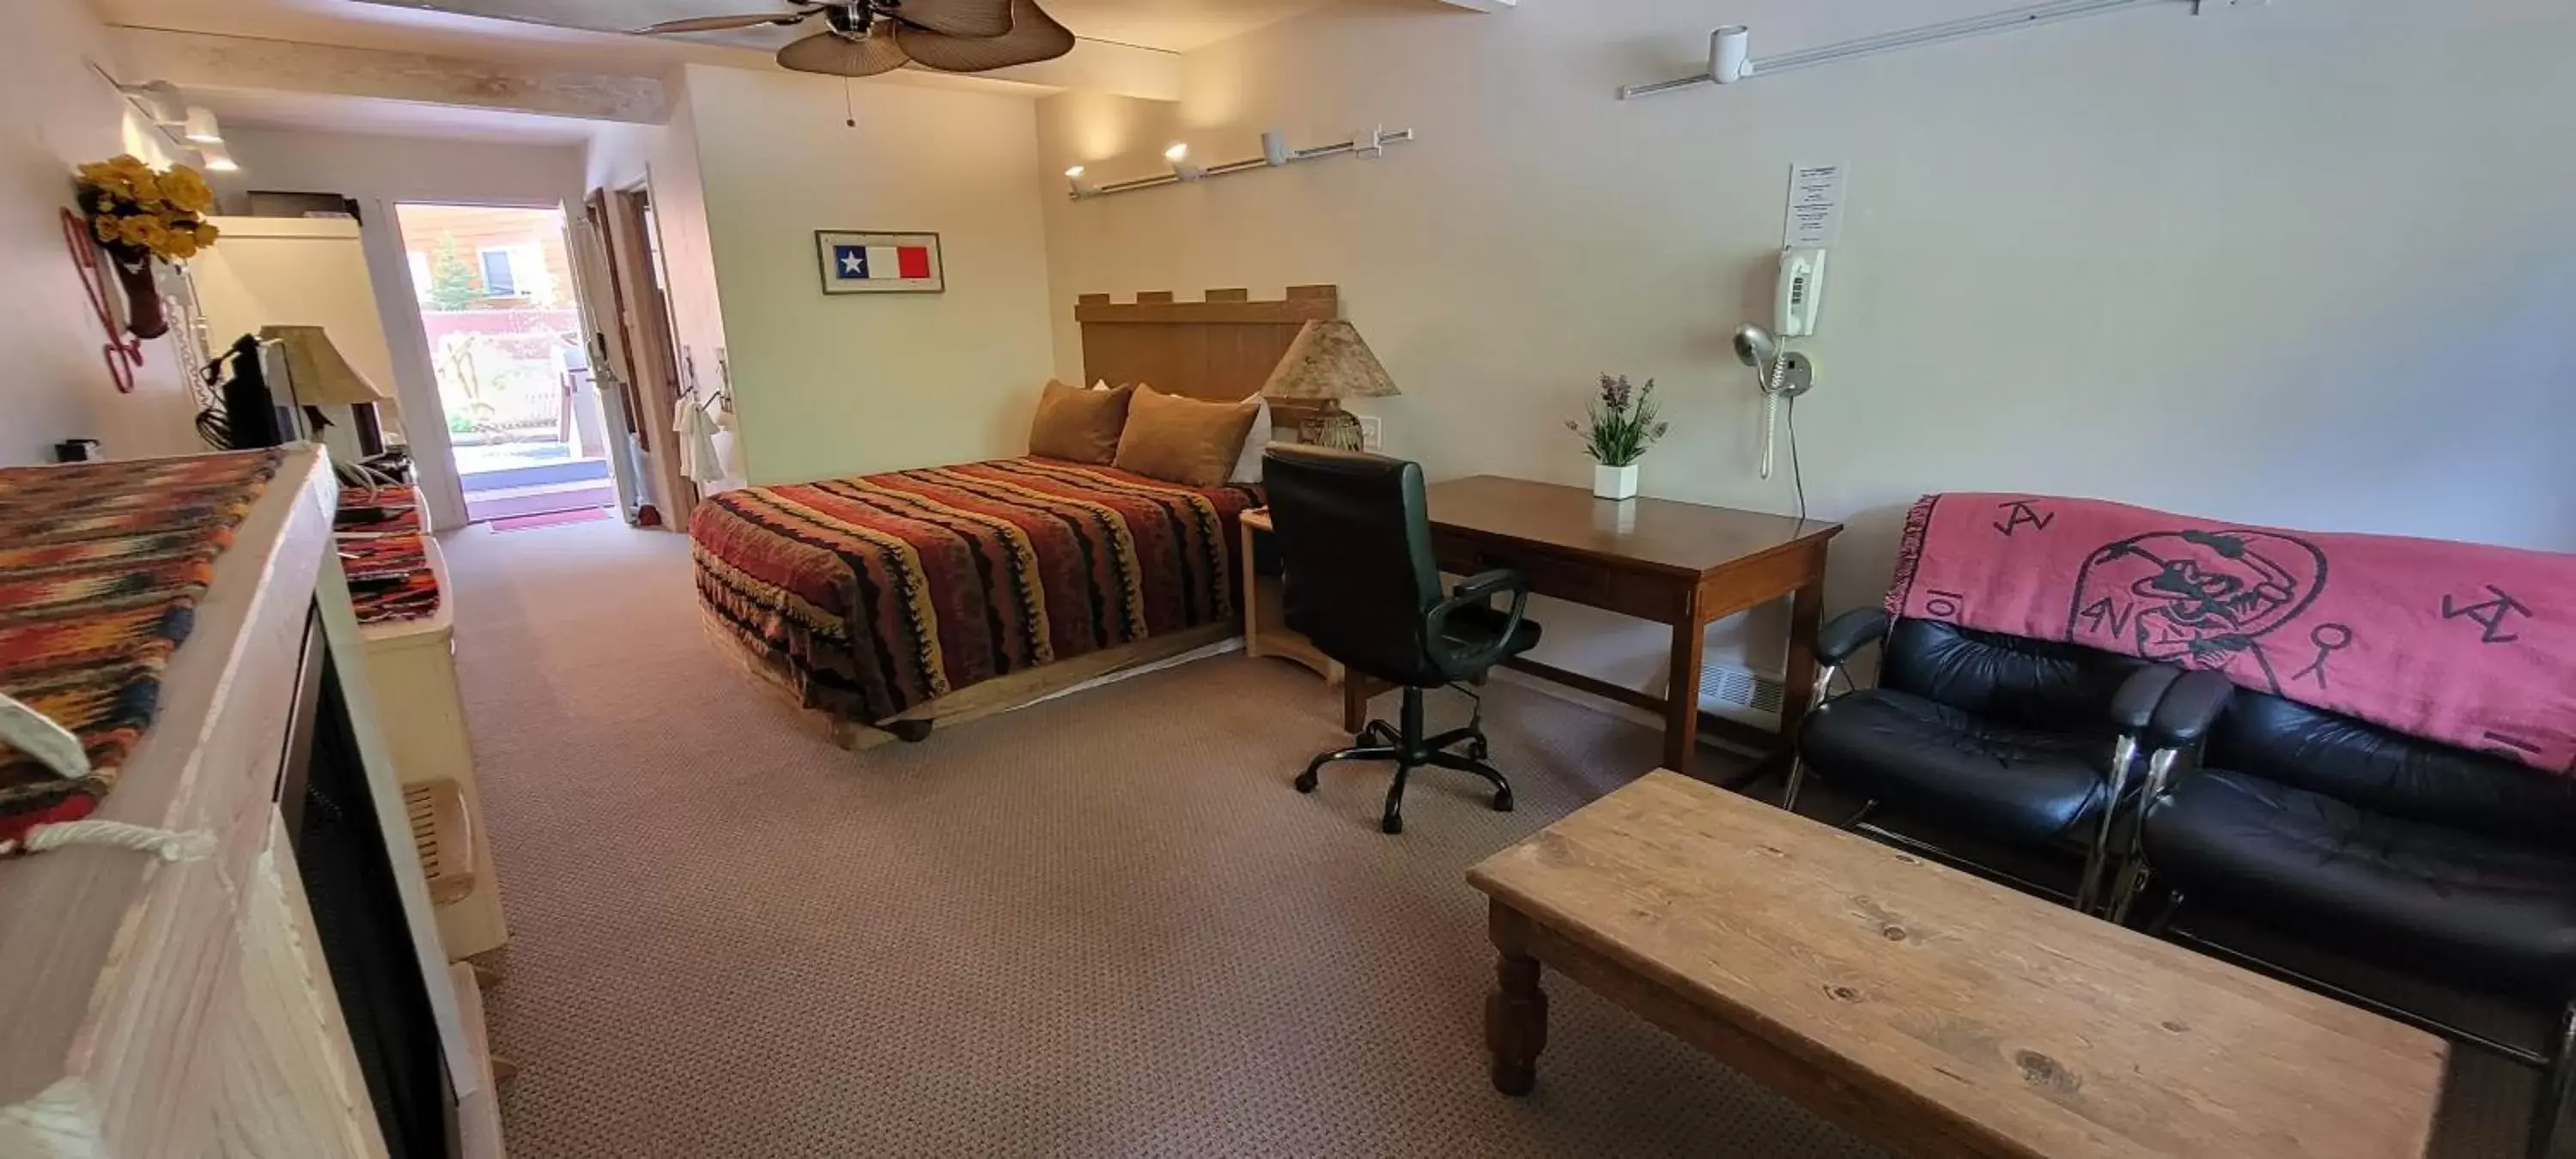 Bedroom, Seating Area in Hot Springs Inn